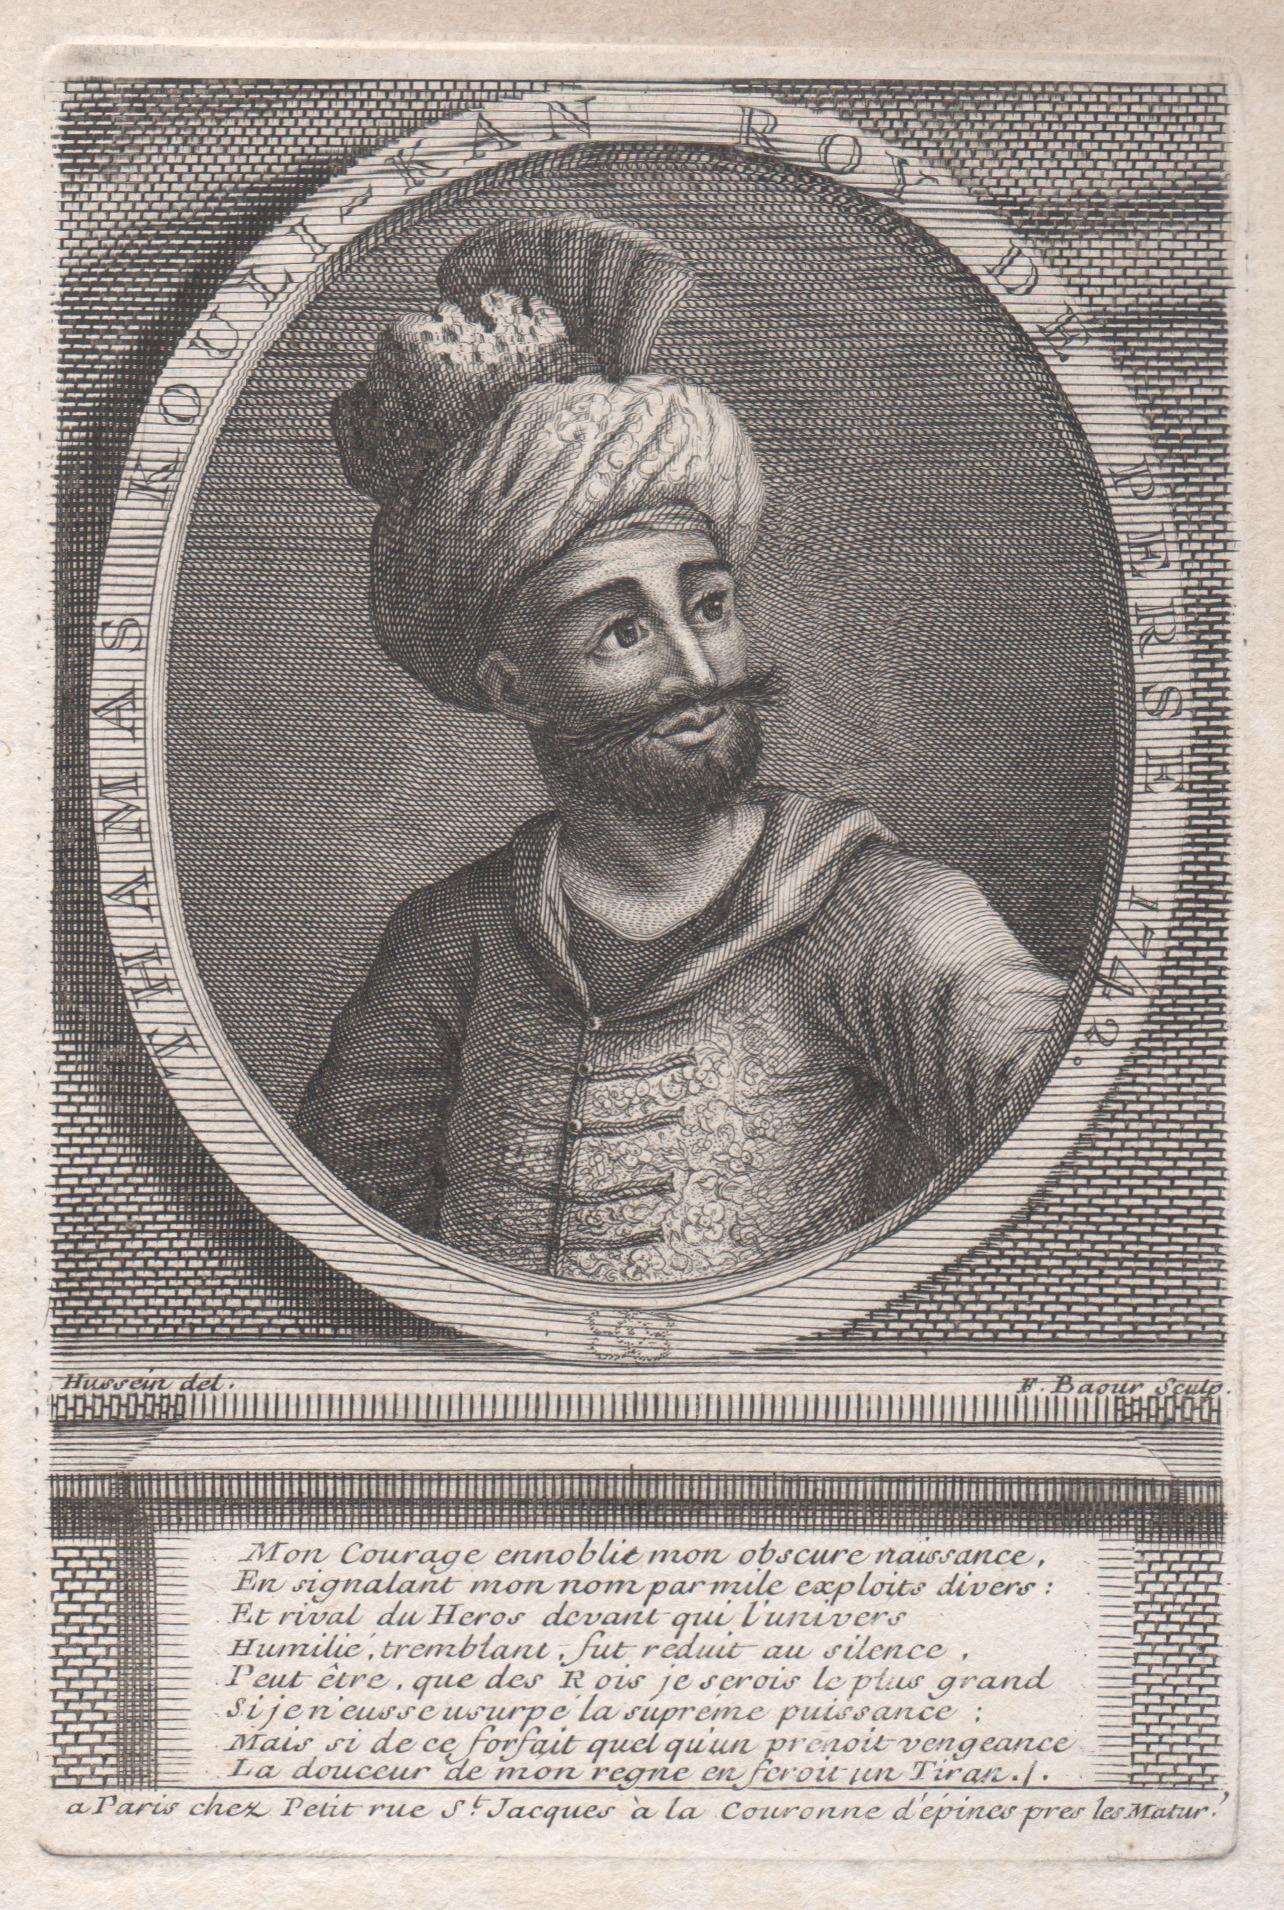 F Baour after Hussain Portrait Print - Thamas Kouli-Kan, Roy de Perse, 1742 (Nader Shah), portrait engraving, 1742